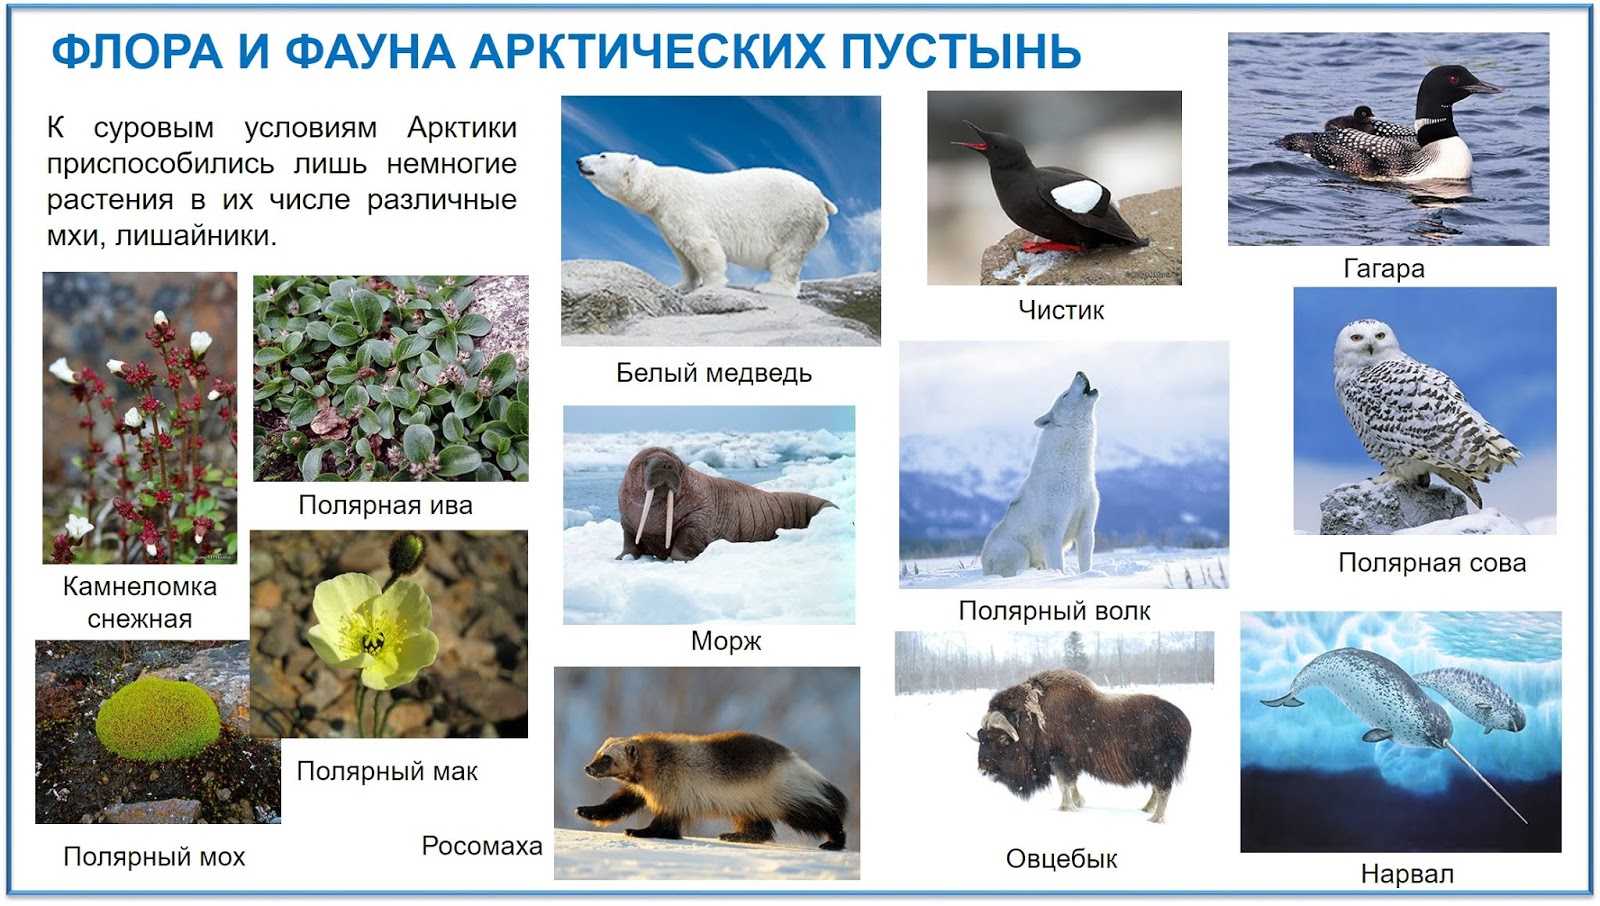 Арктические пустыни россии. географическое положение, карта, климат, животный, растительный мир